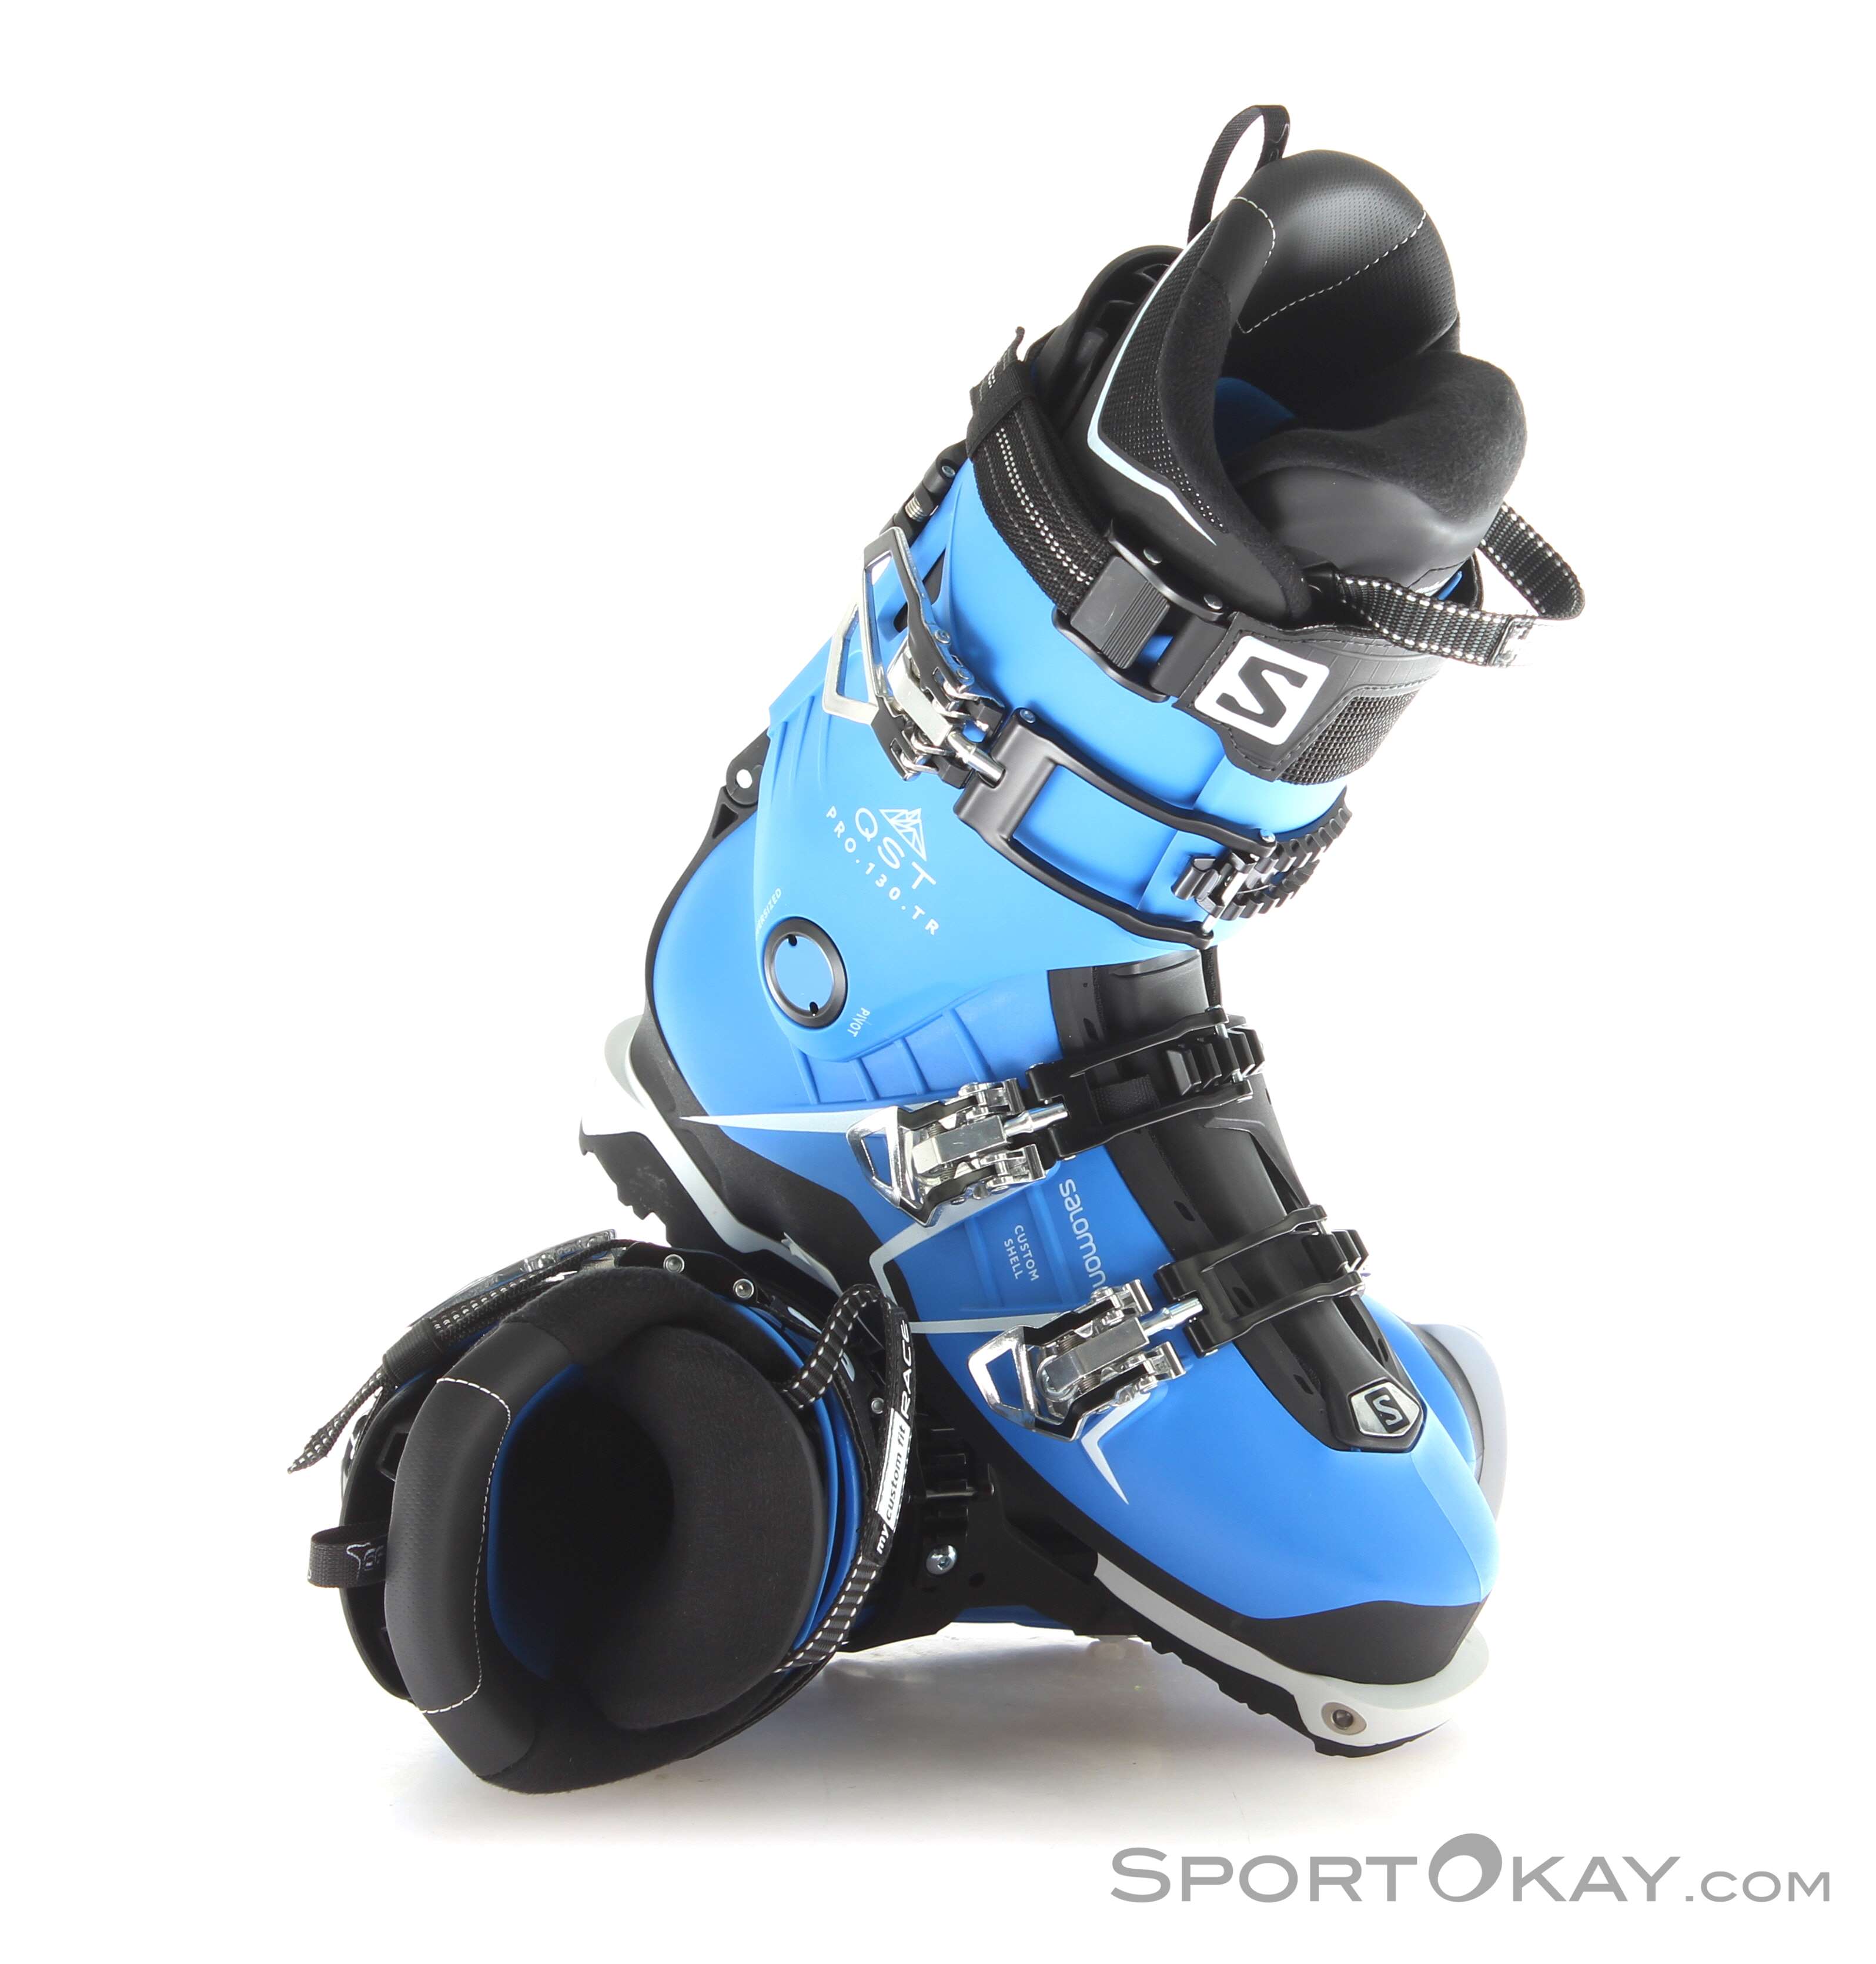 salomon touring ski boots